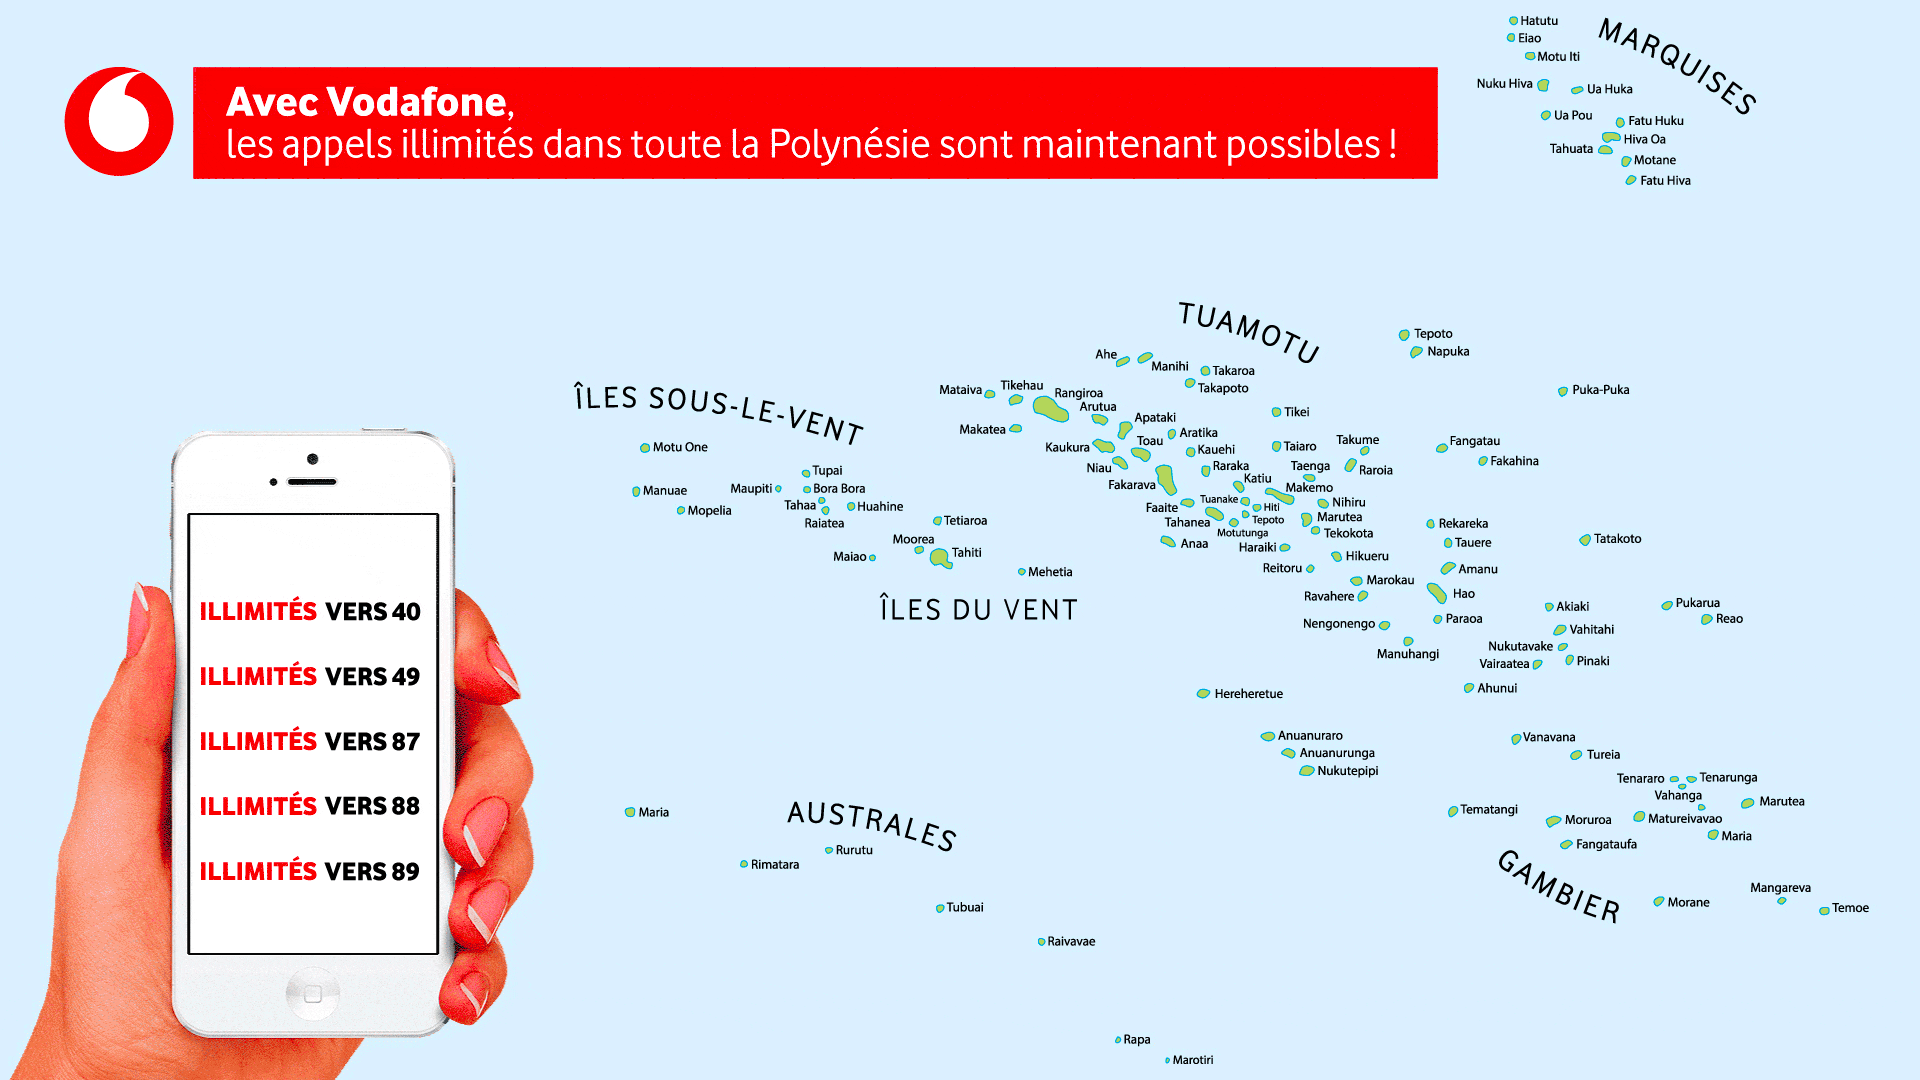 Avec Vodafone, les appels illimités dans toute la Polynésie sont maintenant possibles !